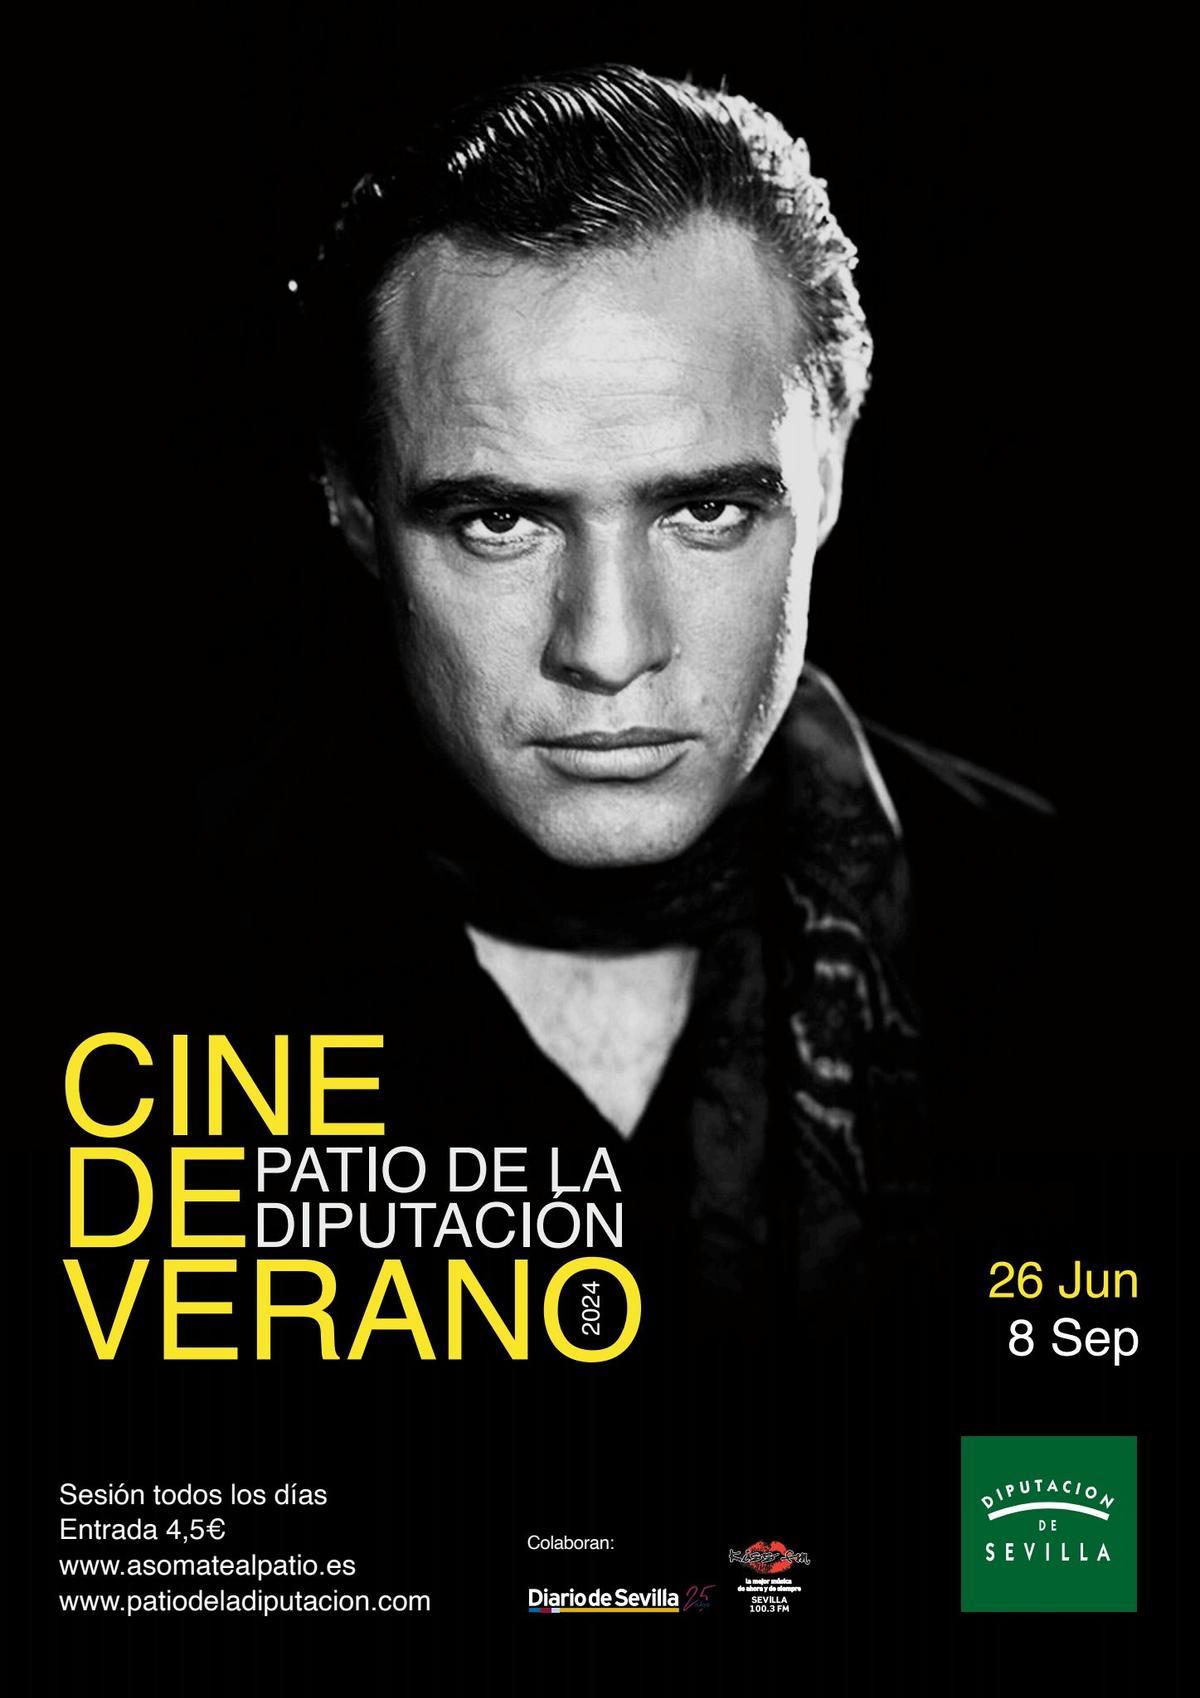 Cartel Cine de Verano en homenaje Marlon Brando